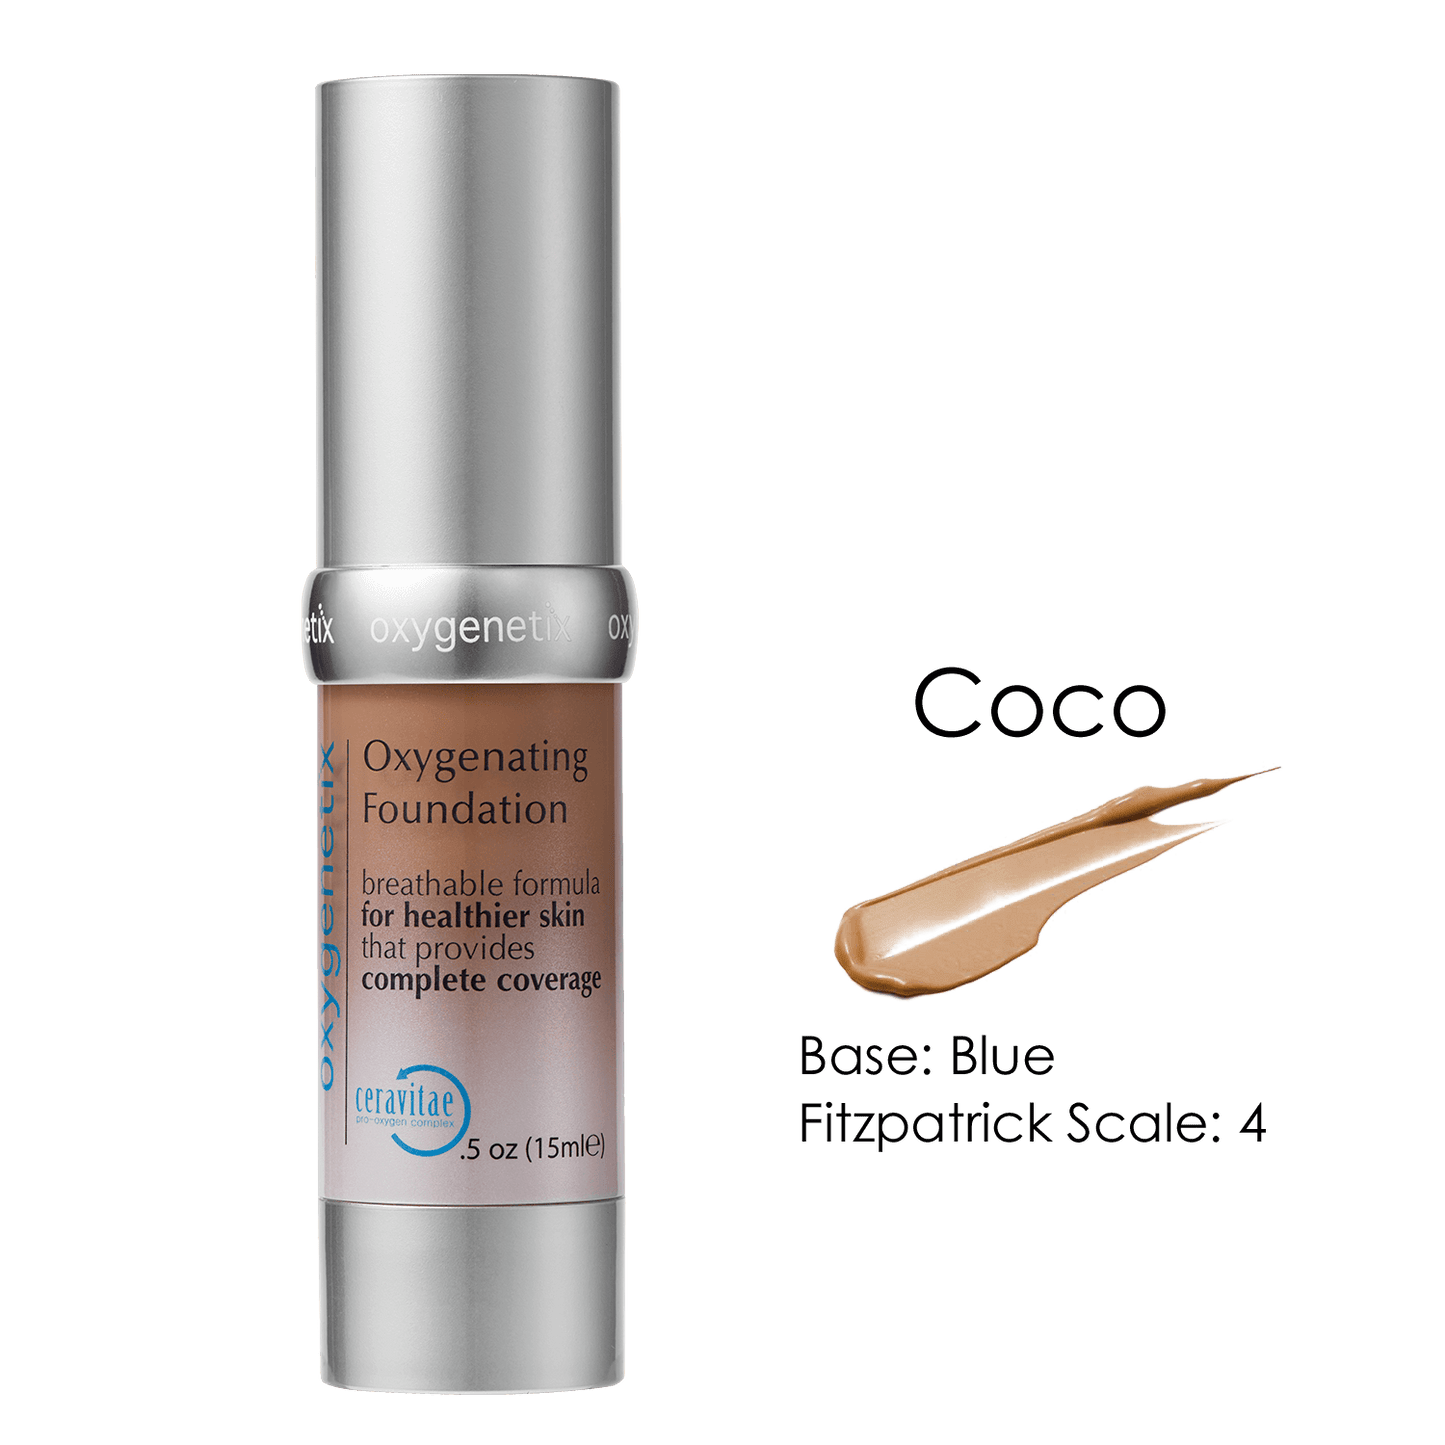 Oxygenetix Oxygenating Foundation - SPF 30 - Coco